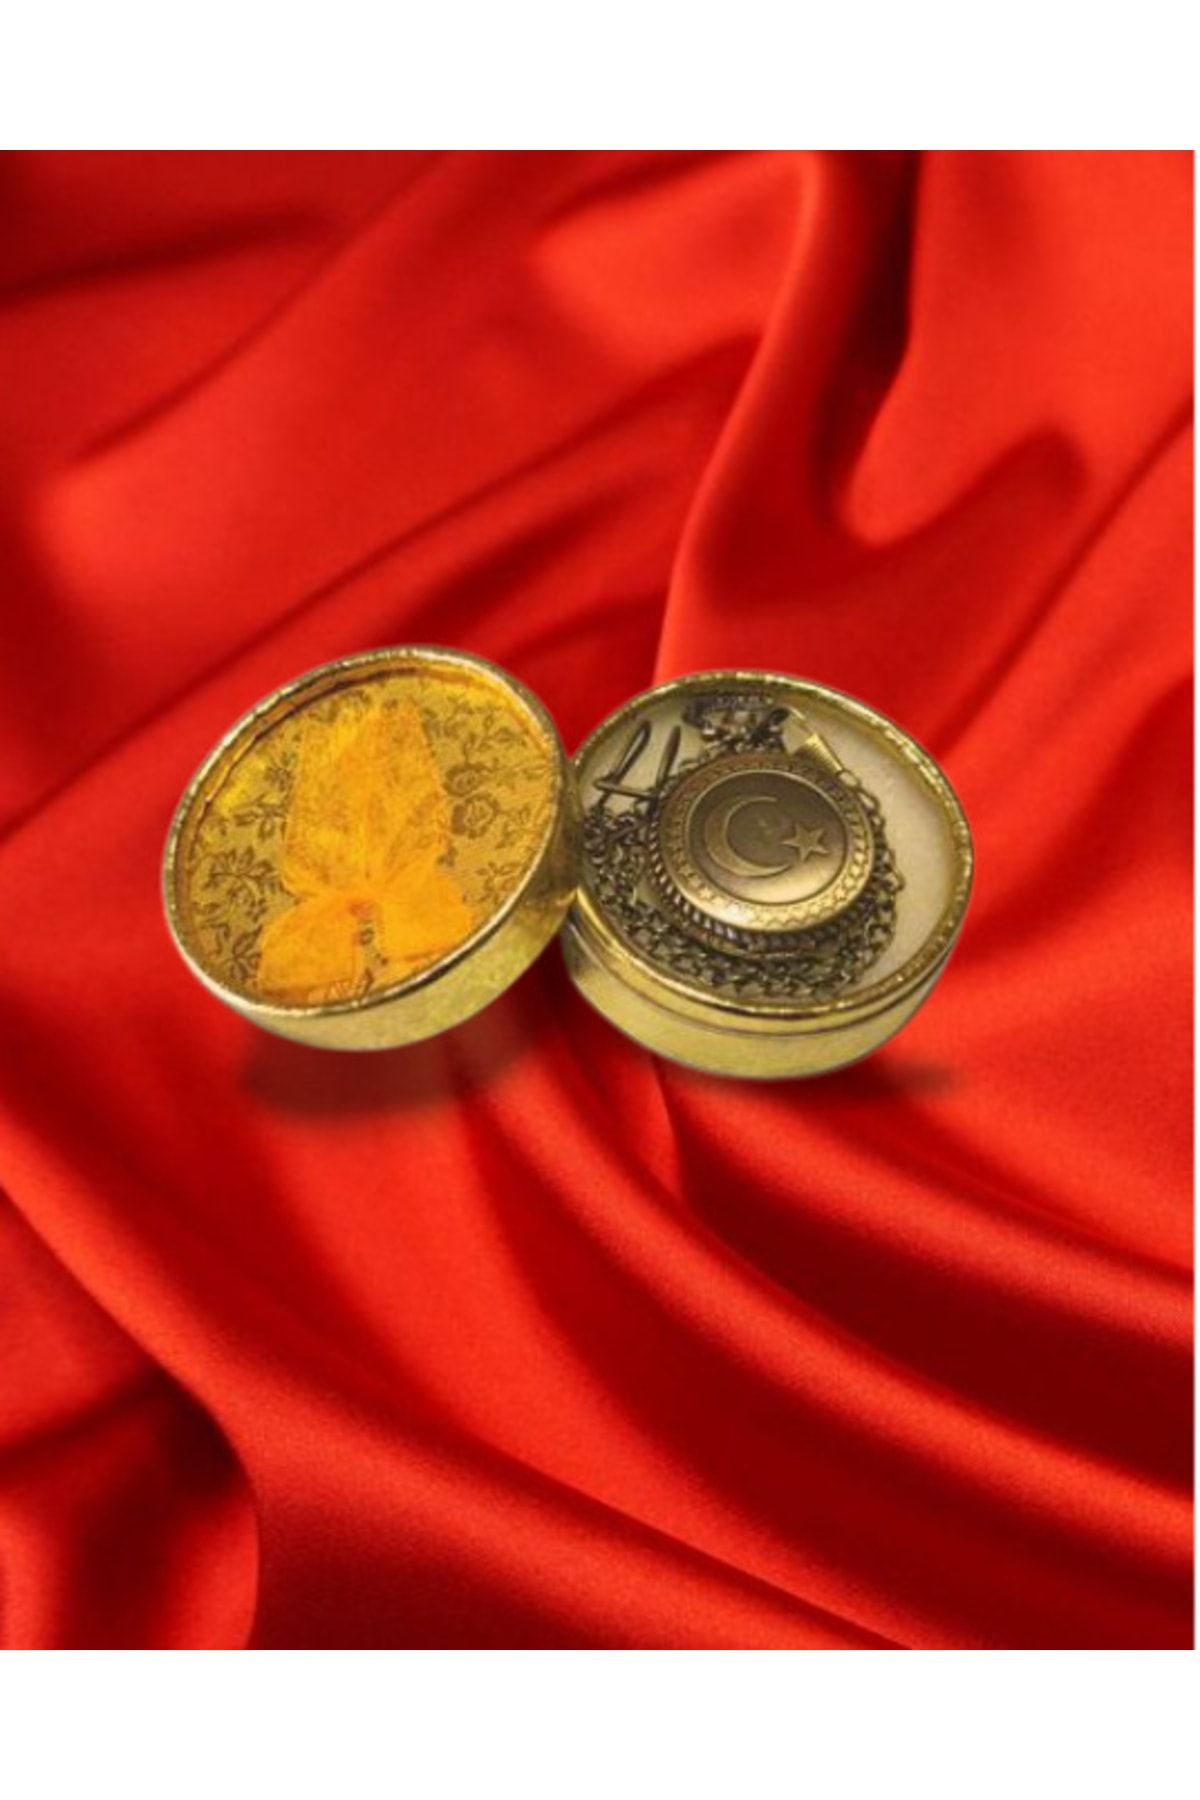 PİRAMİGO Zincirli Askılı Türk Bayraklı Modelli Antik Köstekli Saat